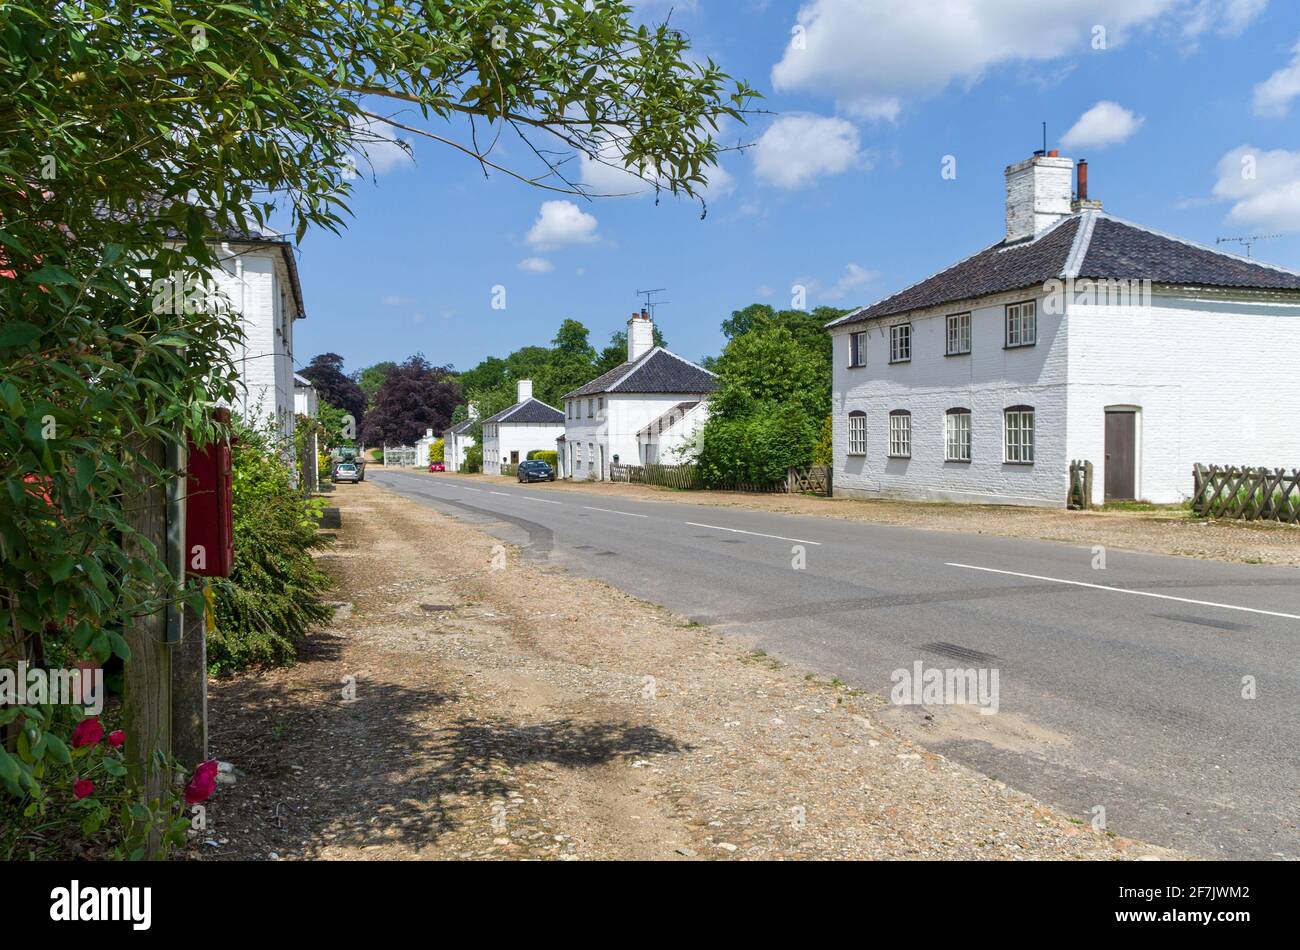 Straßenszene im Dorf New Houghton, Norfolk, Großbritannien; weiß getünchte Doppelfronten-Hütten aus dem Jahr 1729. Stockfoto